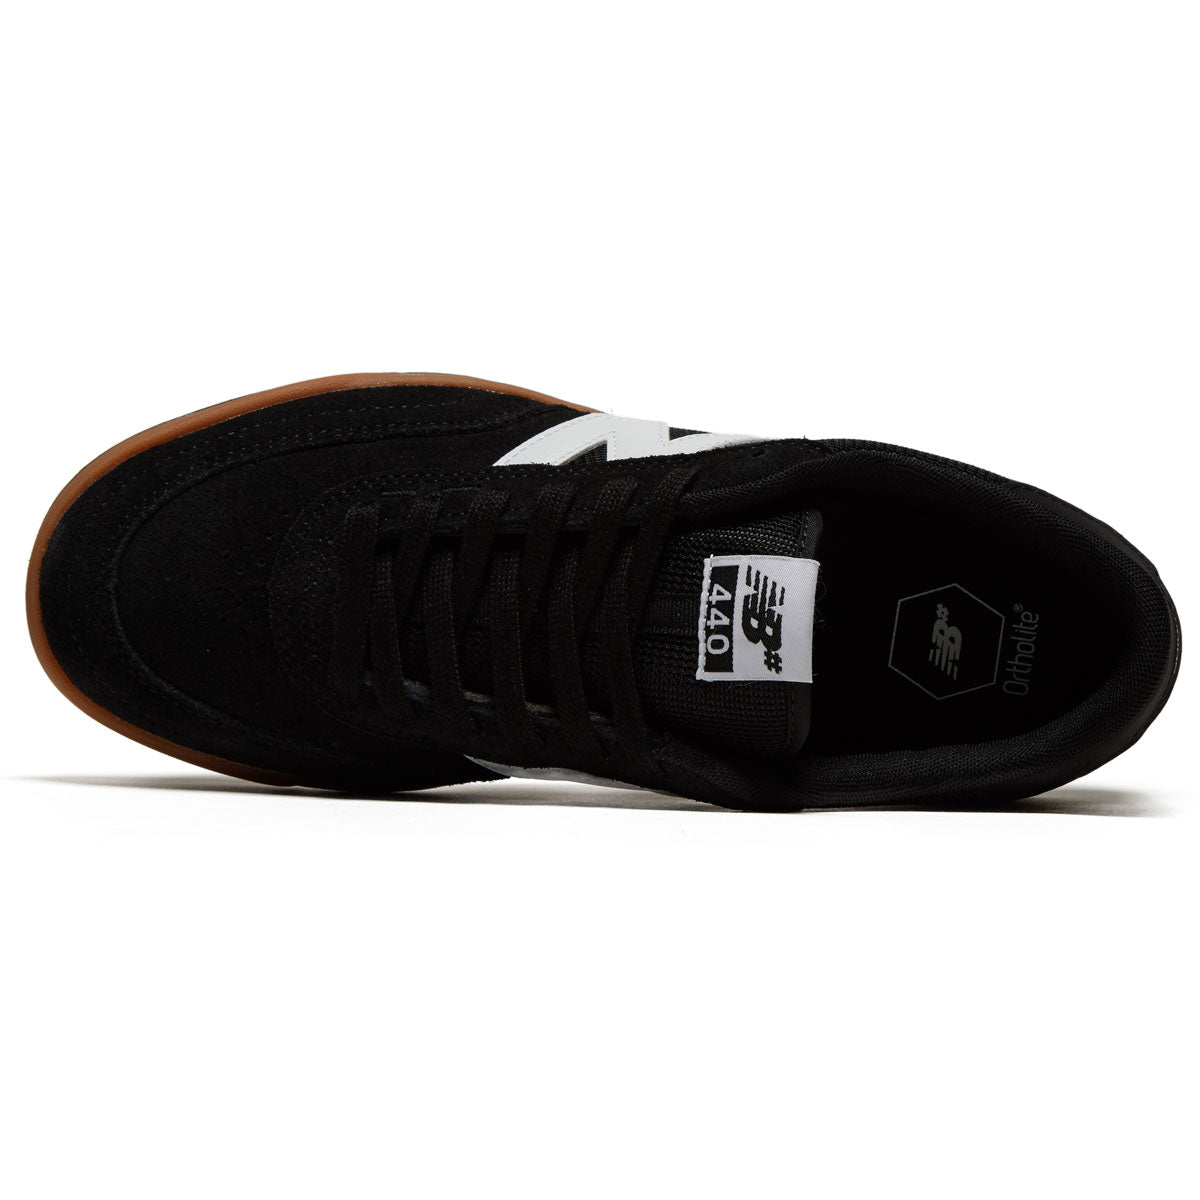 New Balance 440 V2 Shoes - Black image 3